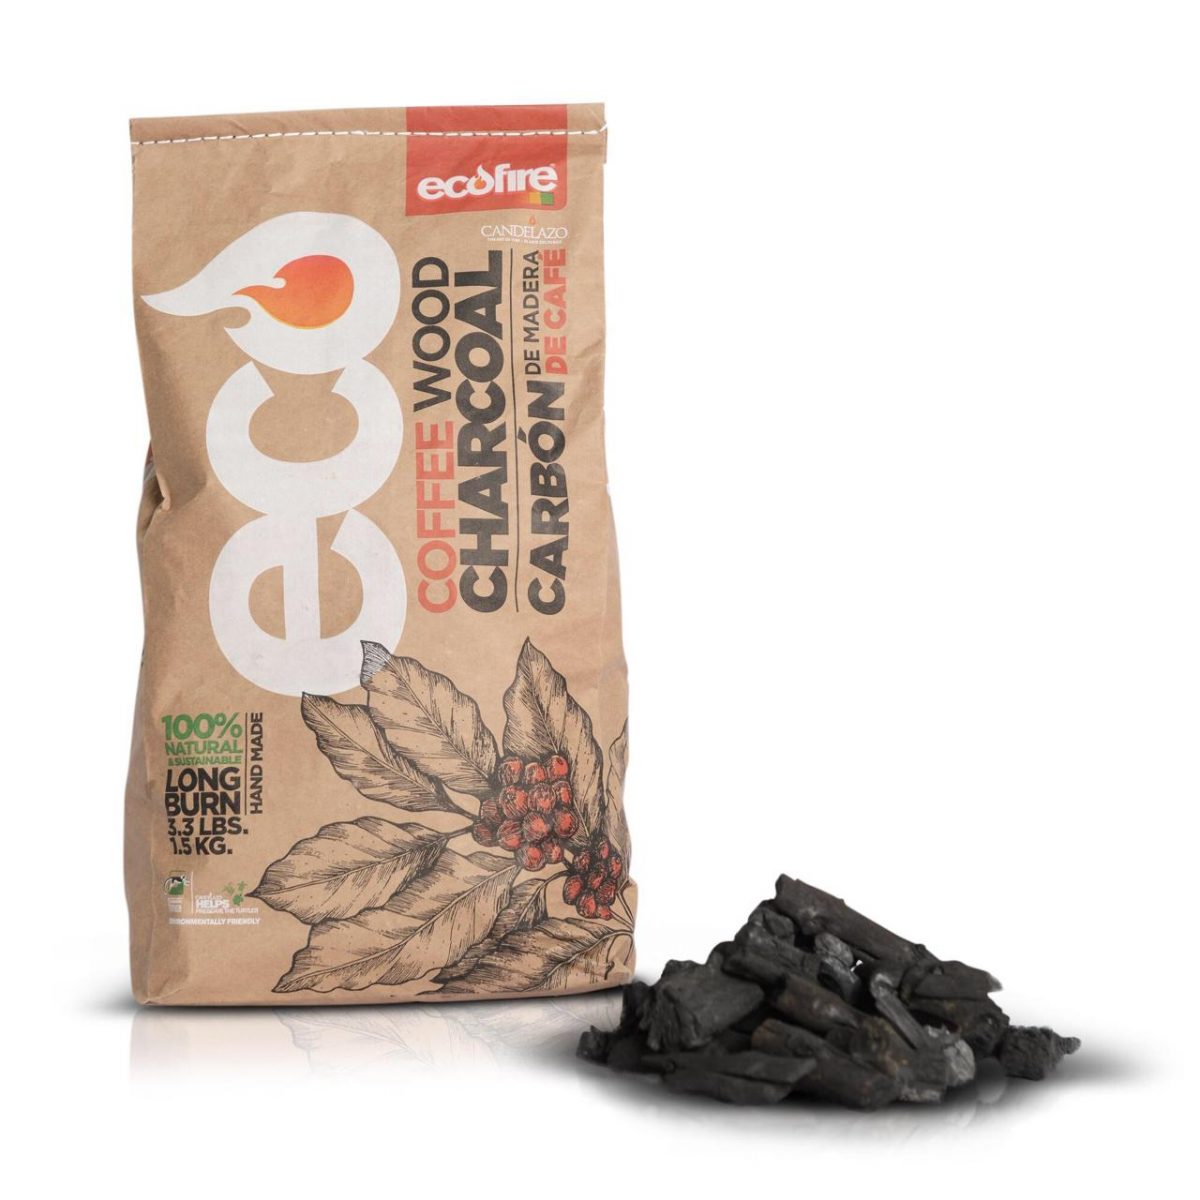 Traición Artes literarias Explícito Carbón de Madera de Café 100% Natural Ecofire x 1.5 kg - Candelazo